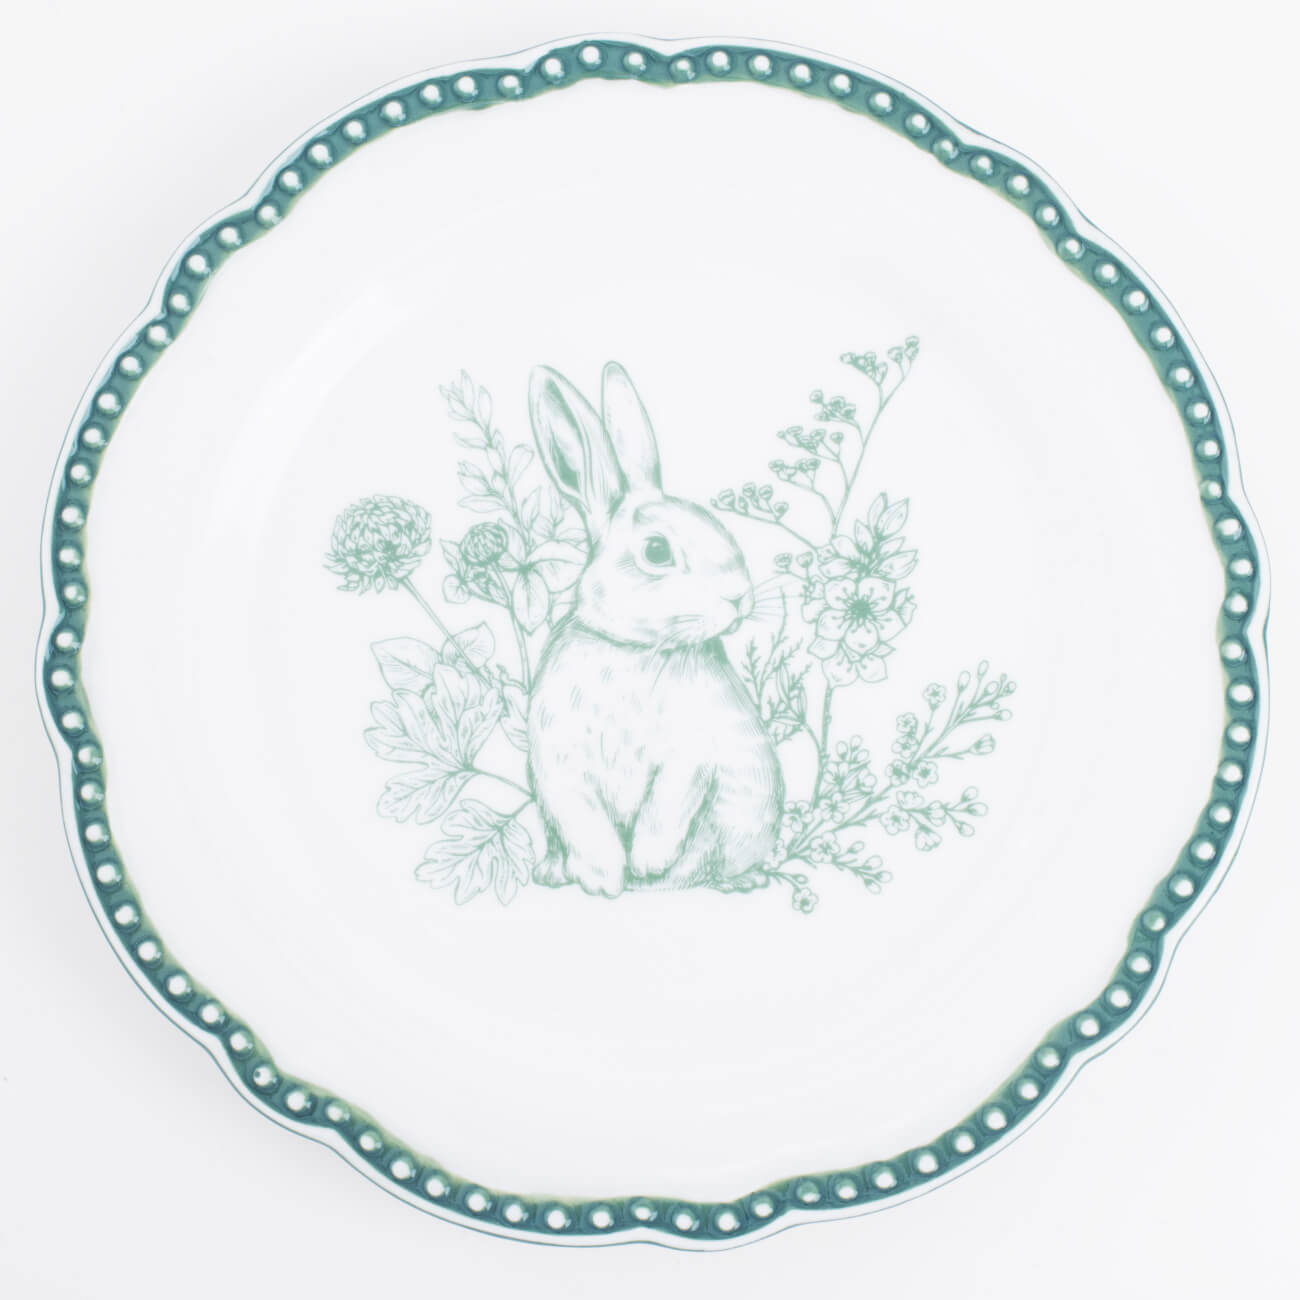 Тарелка закусочная, 21 см, керамика, бело-зеленая, Кролик в цветах, Easter blooming